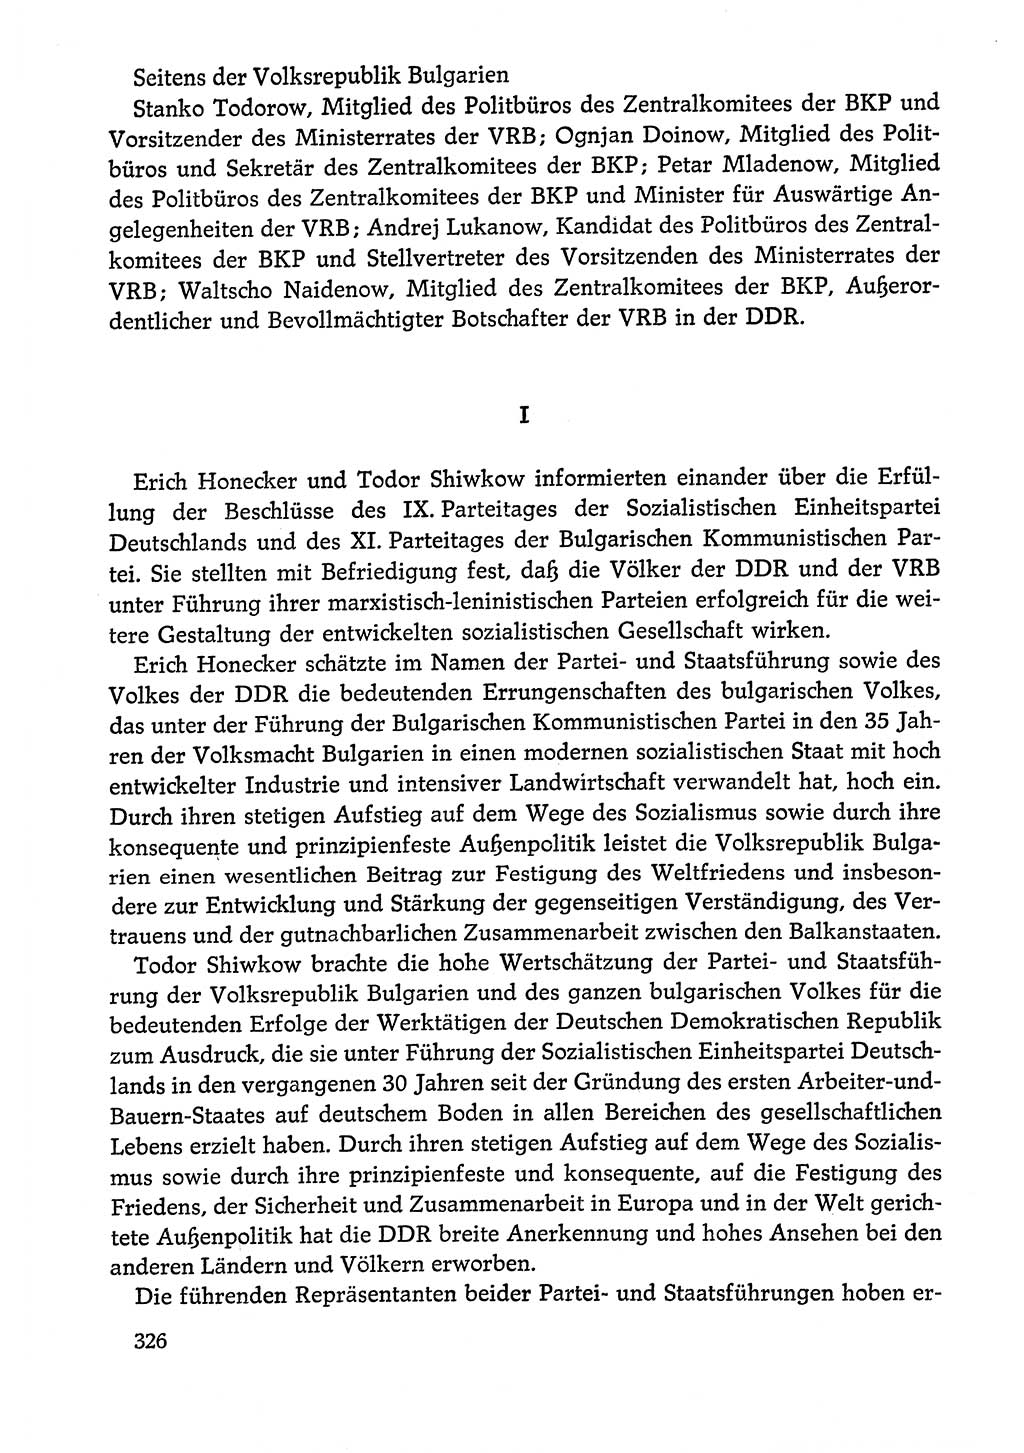 Dokumente der Sozialistischen Einheitspartei Deutschlands (SED) [Deutsche Demokratische Republik (DDR)] 1978-1979, Seite 326 (Dok. SED DDR 1978-1979, S. 326)